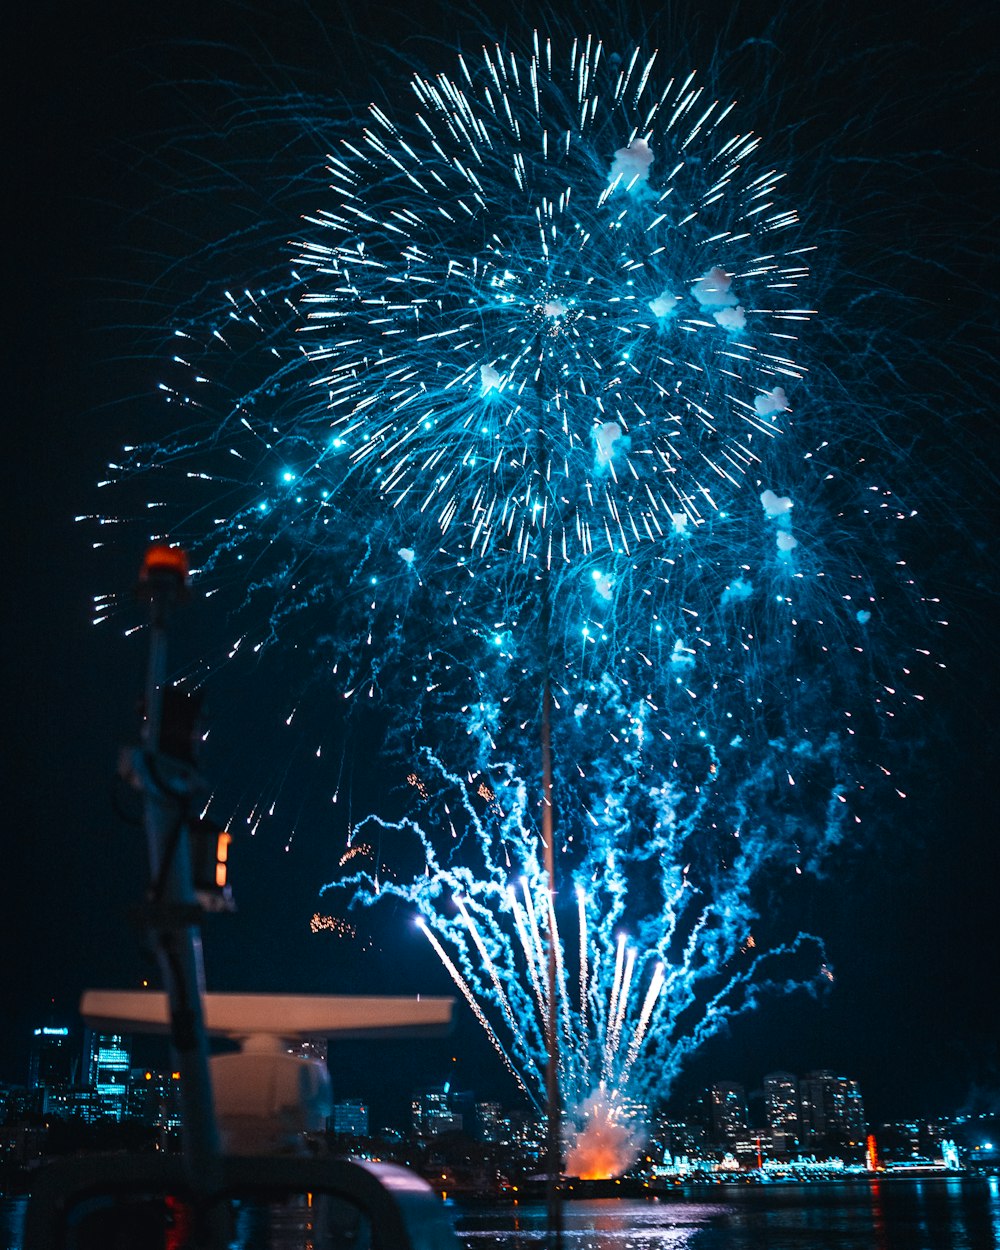 Fireworks display photo – Free Sydney Image on Unsplash